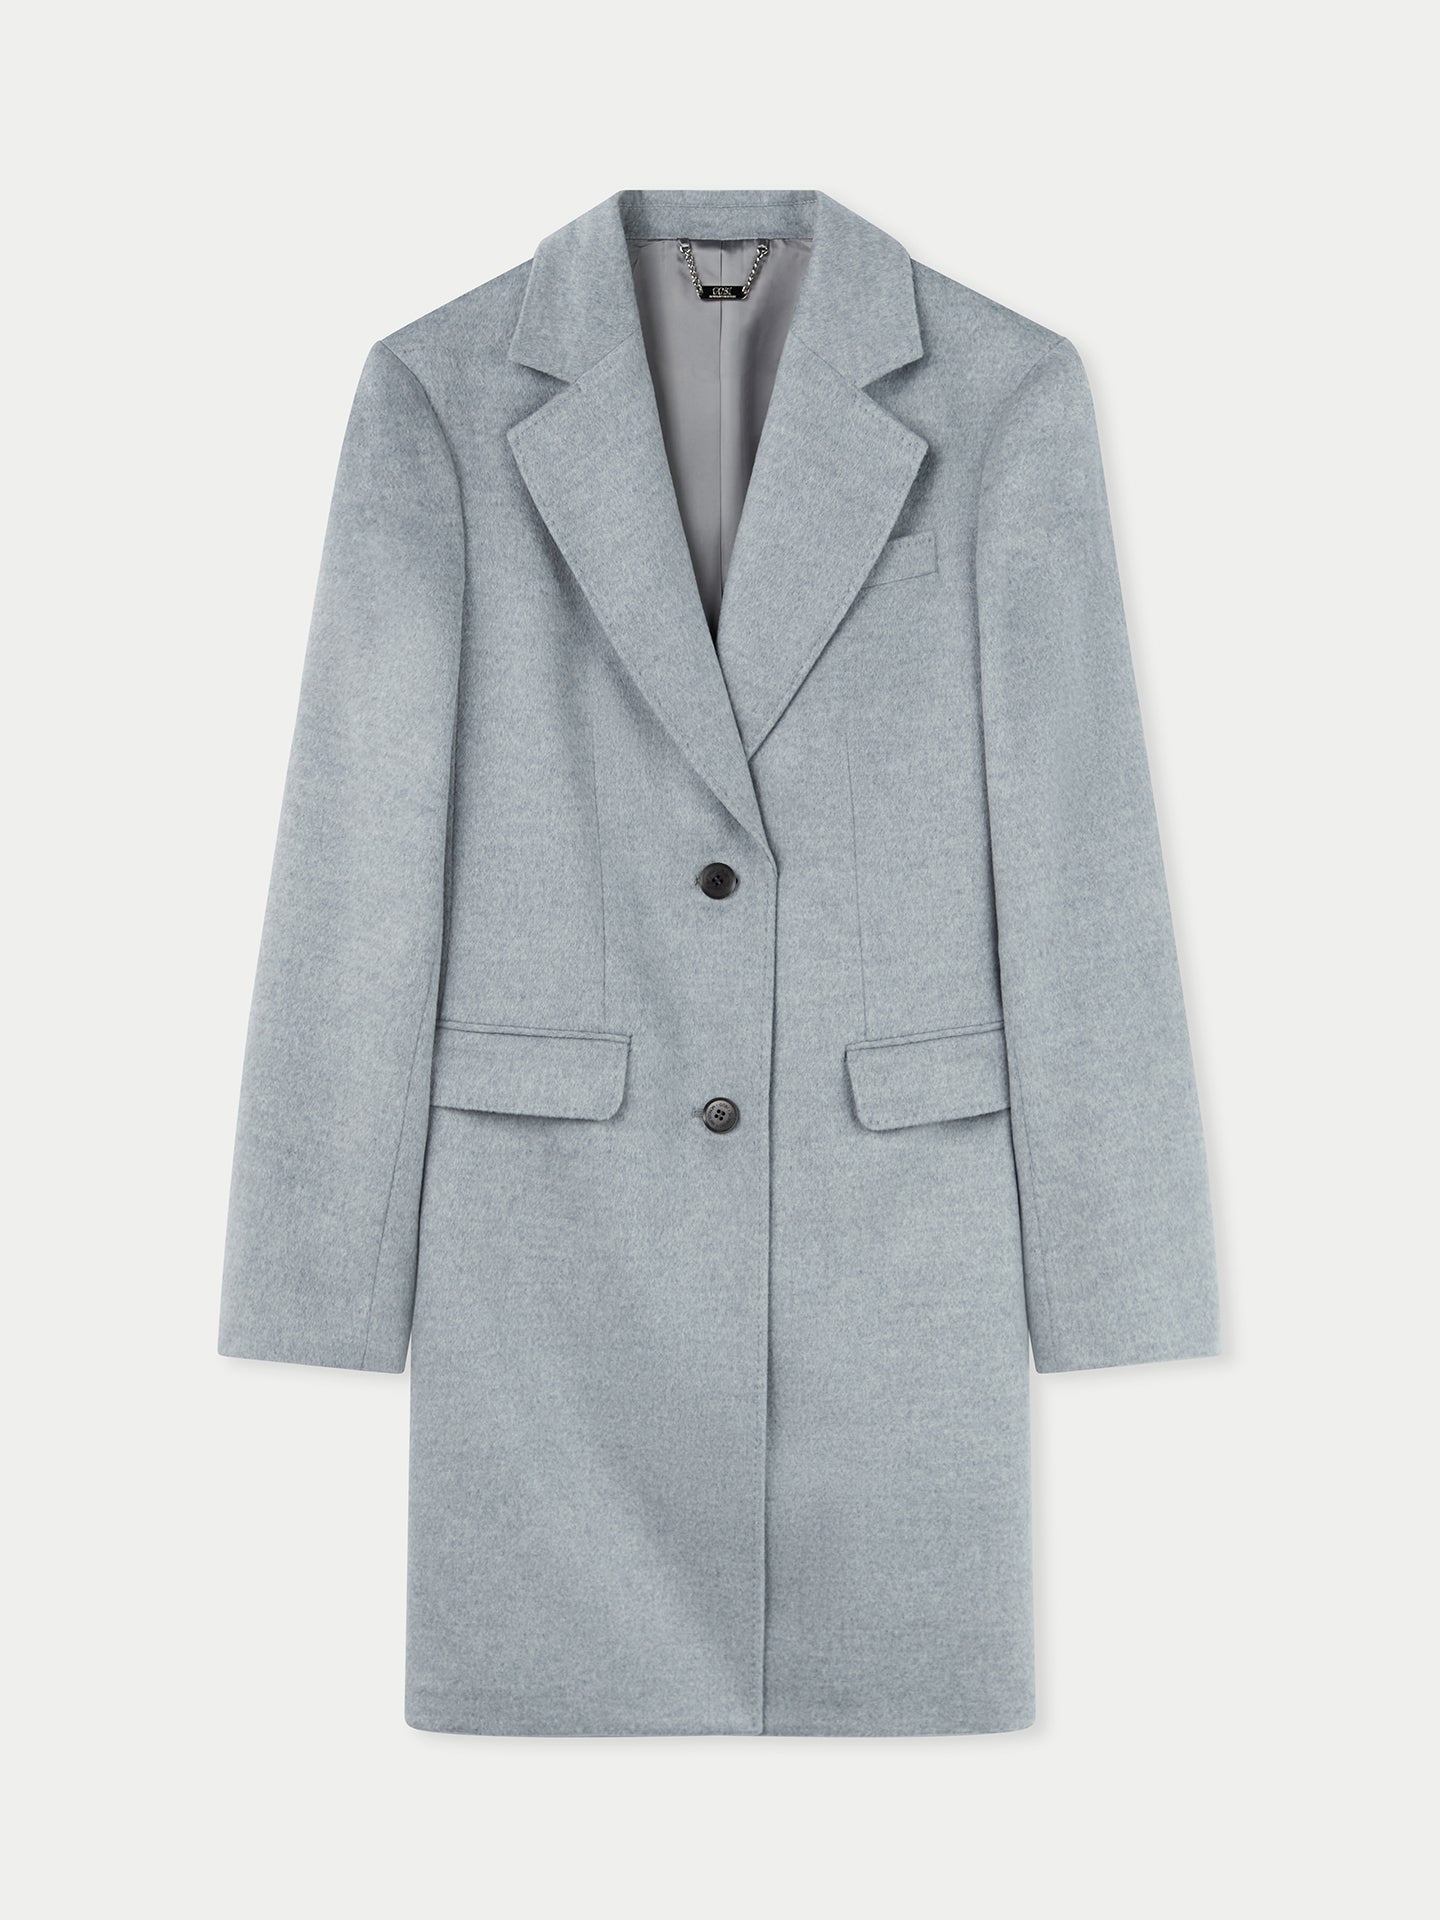 Women's Cashmere Coat with Notched Lapel Vapor Blue - Gobi Cashmere